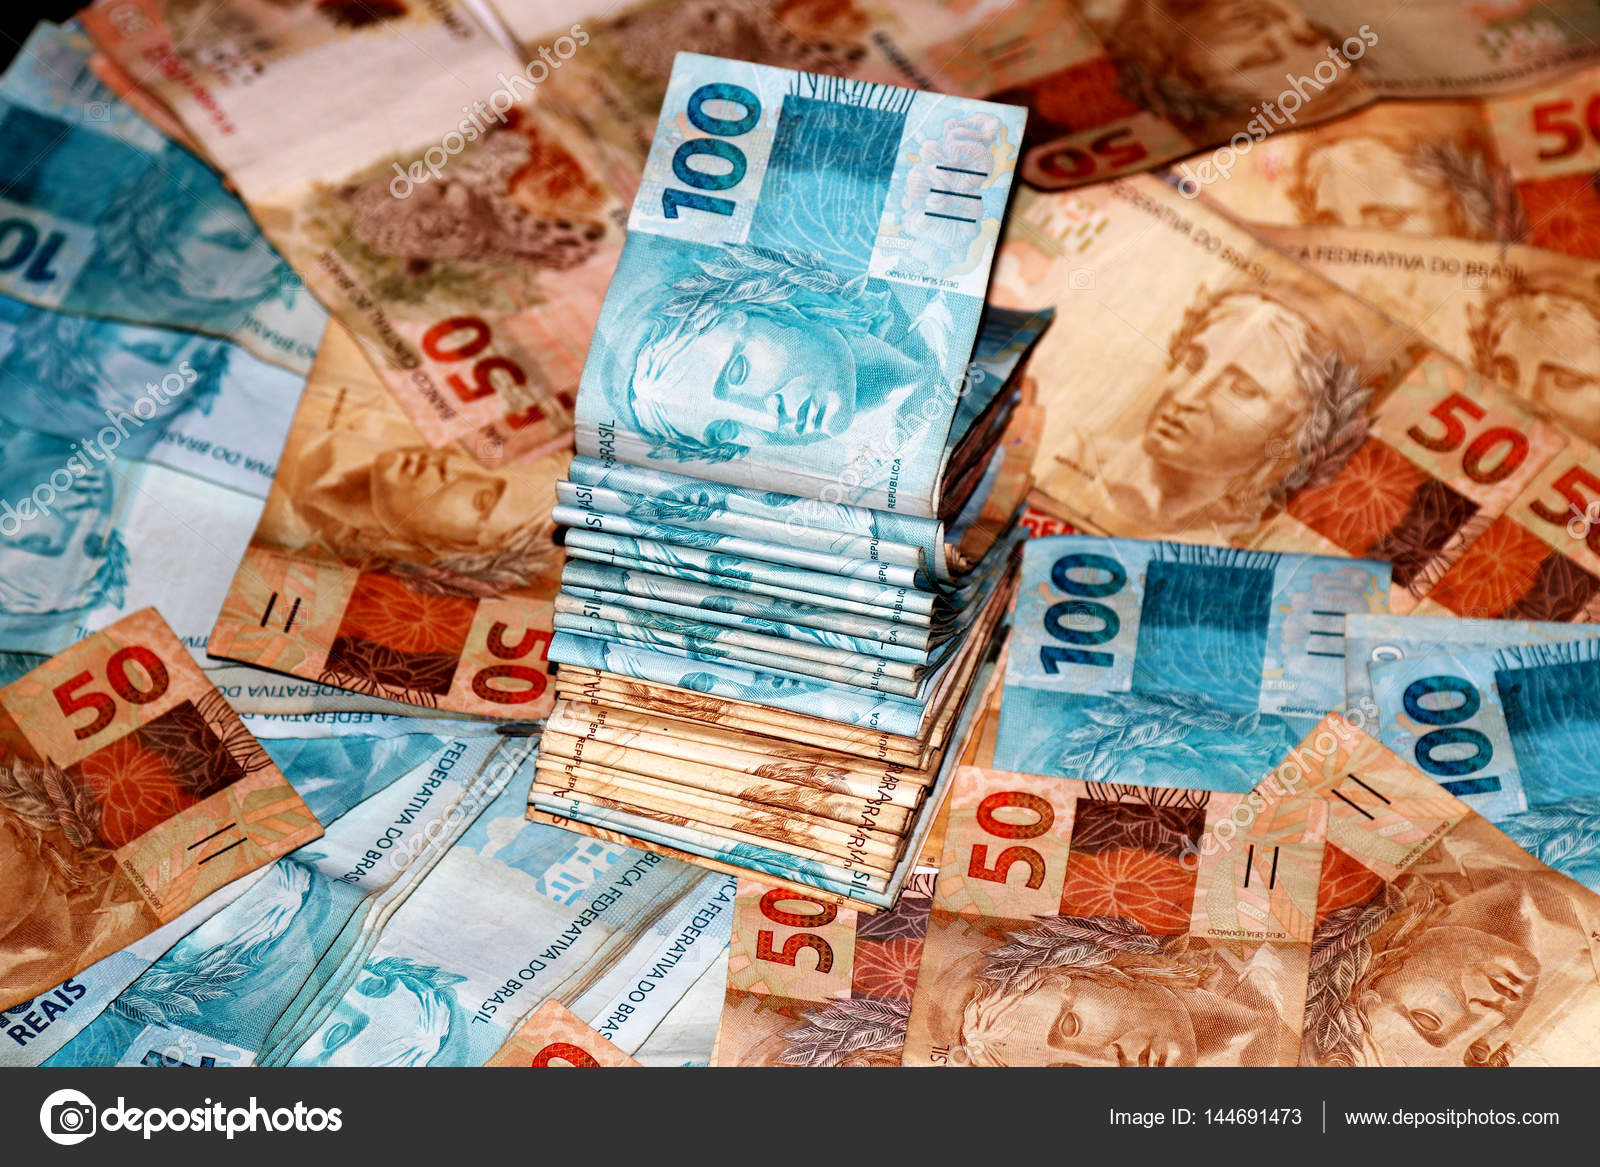 Notas de 100 reais do brasil Stock Photo by ©joelfotos 144692049